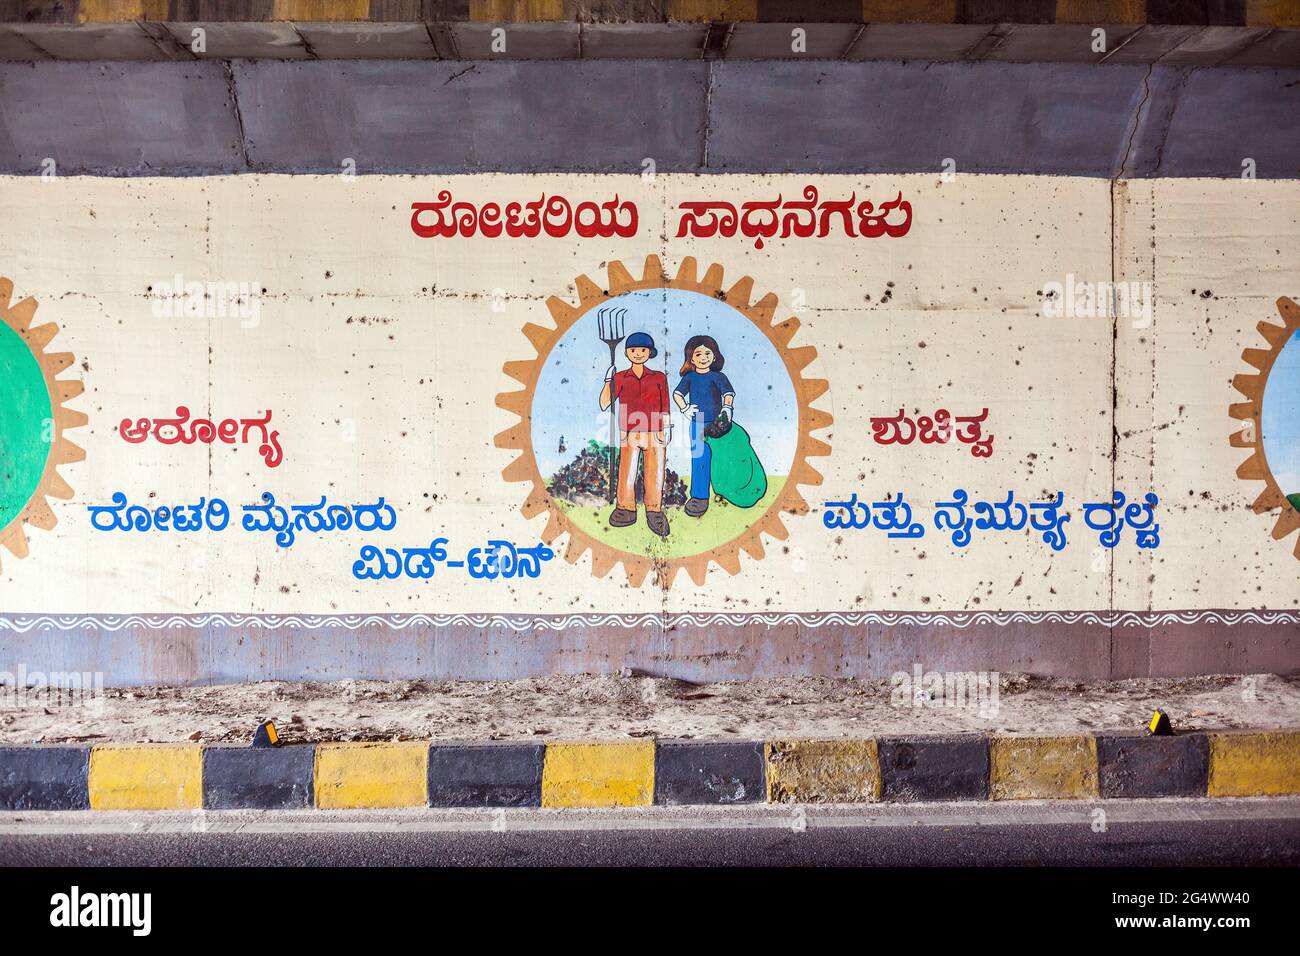 Wandmalerei mit devanagari sanskrit zur Förderung von Umweltgesundheitsfragen, Mysore, Karnataka, Indien Stockfoto